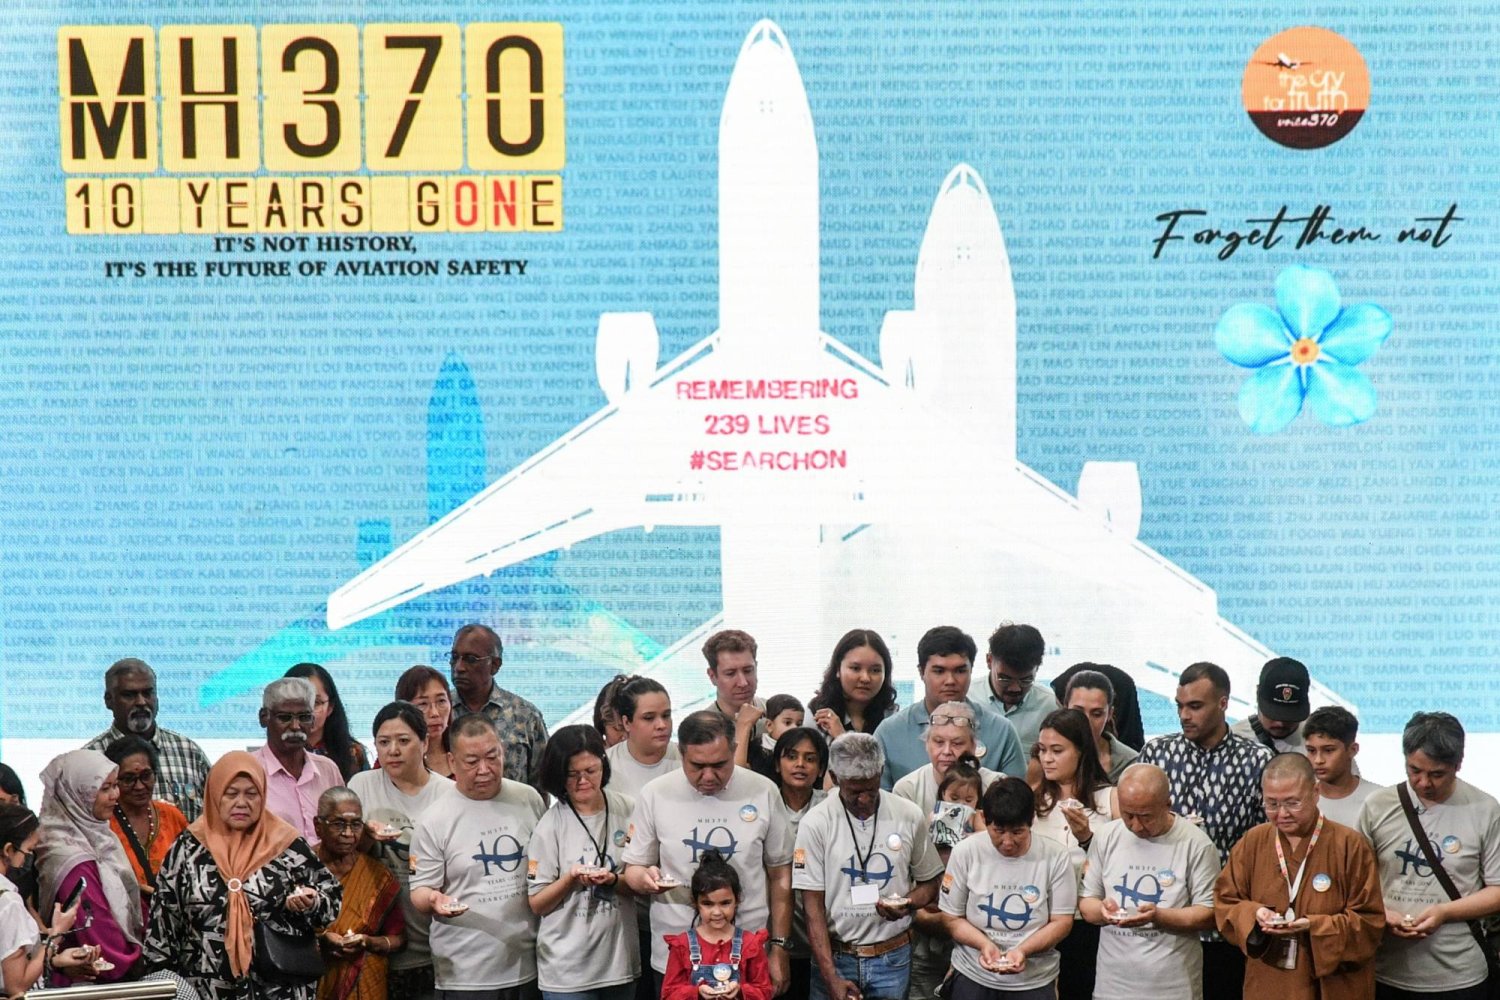 اختفت الرحلة إم إتش 370 والتي كان على متنها 239 شخصا في 8 مارس عام 2014 (إ.ب.أ)